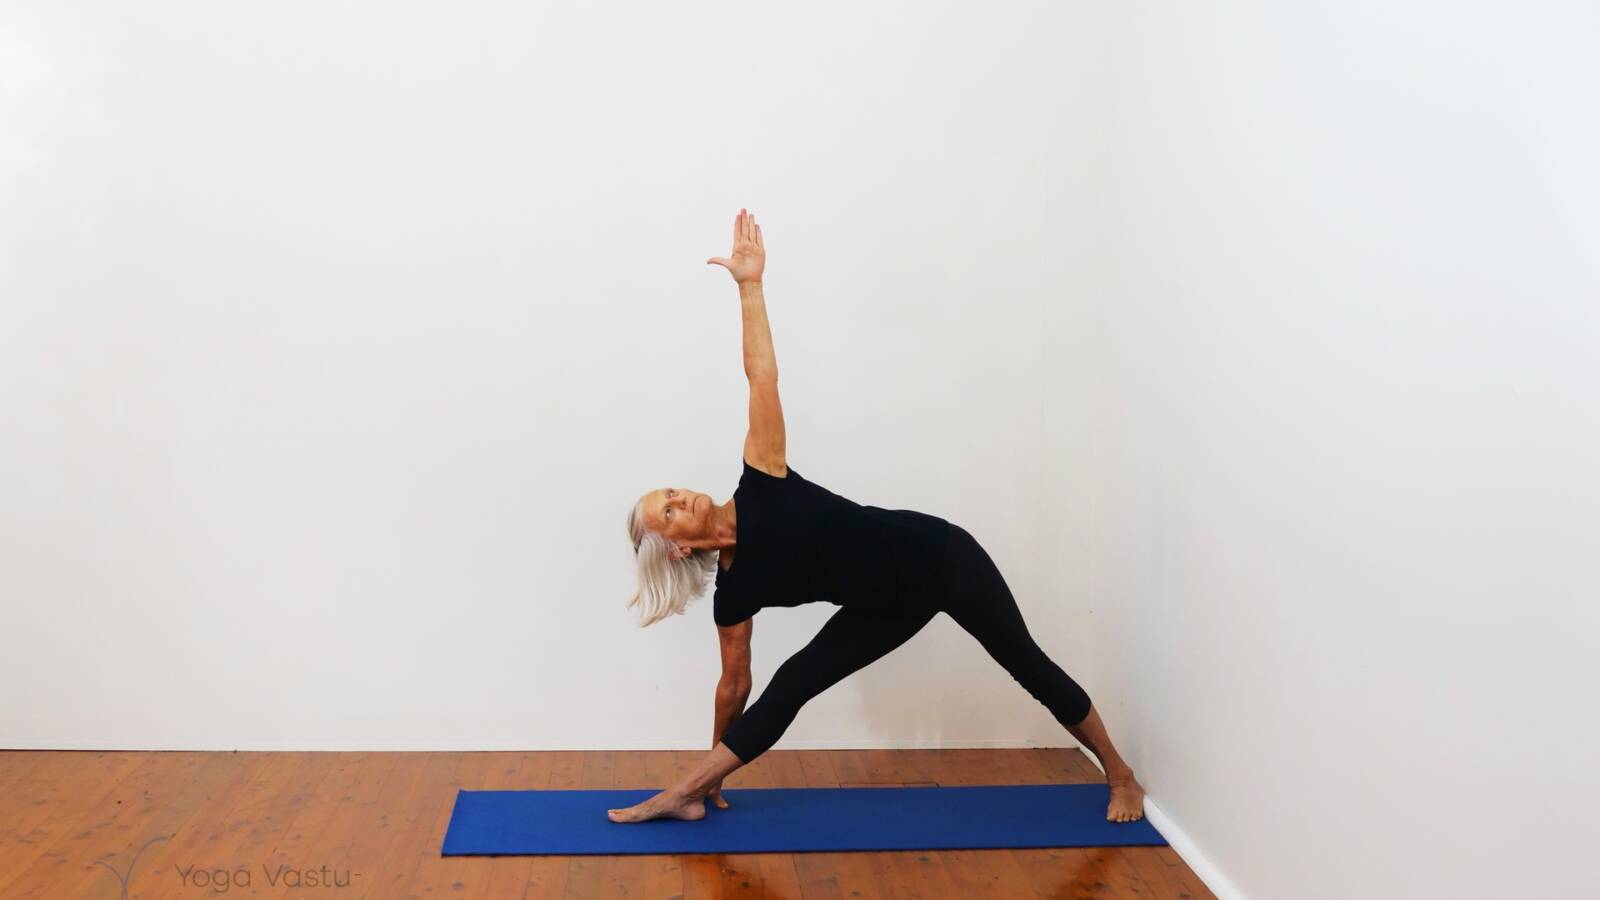 Full 1 Hour Yoga Class | Side Bend & Twisting Yoga Class | Yograja - YouTube